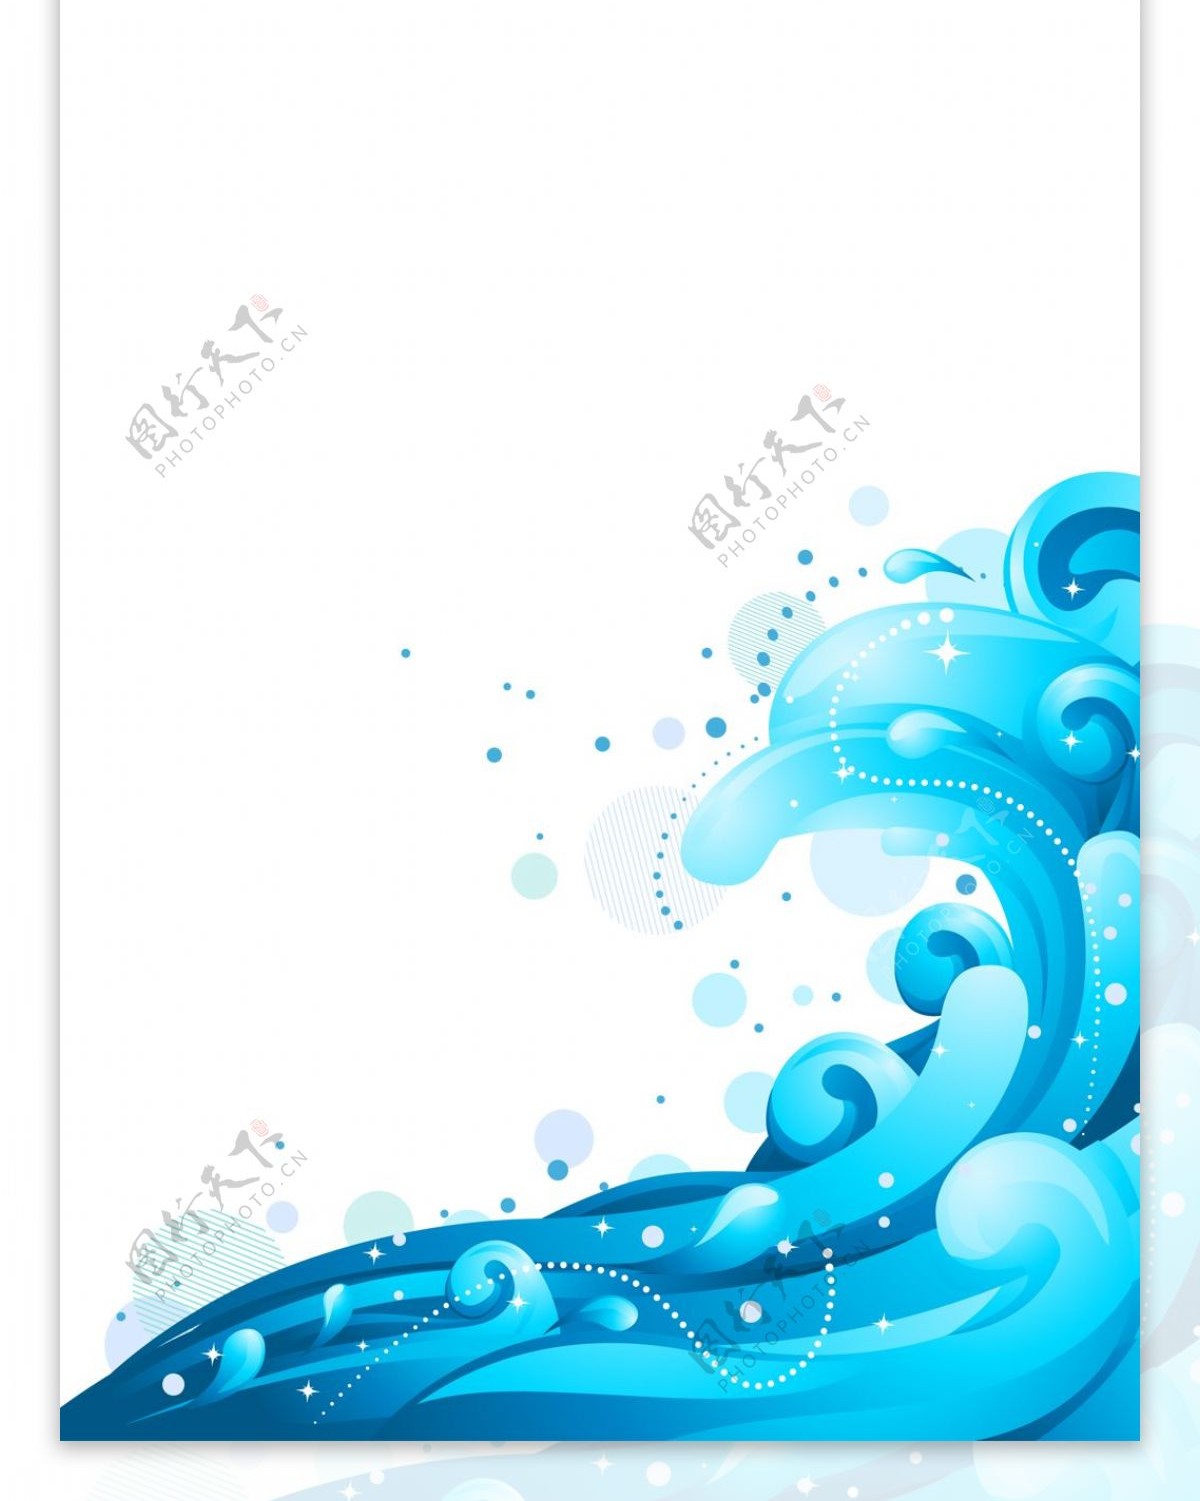 简约蓝色展架模板设计画面素材海报